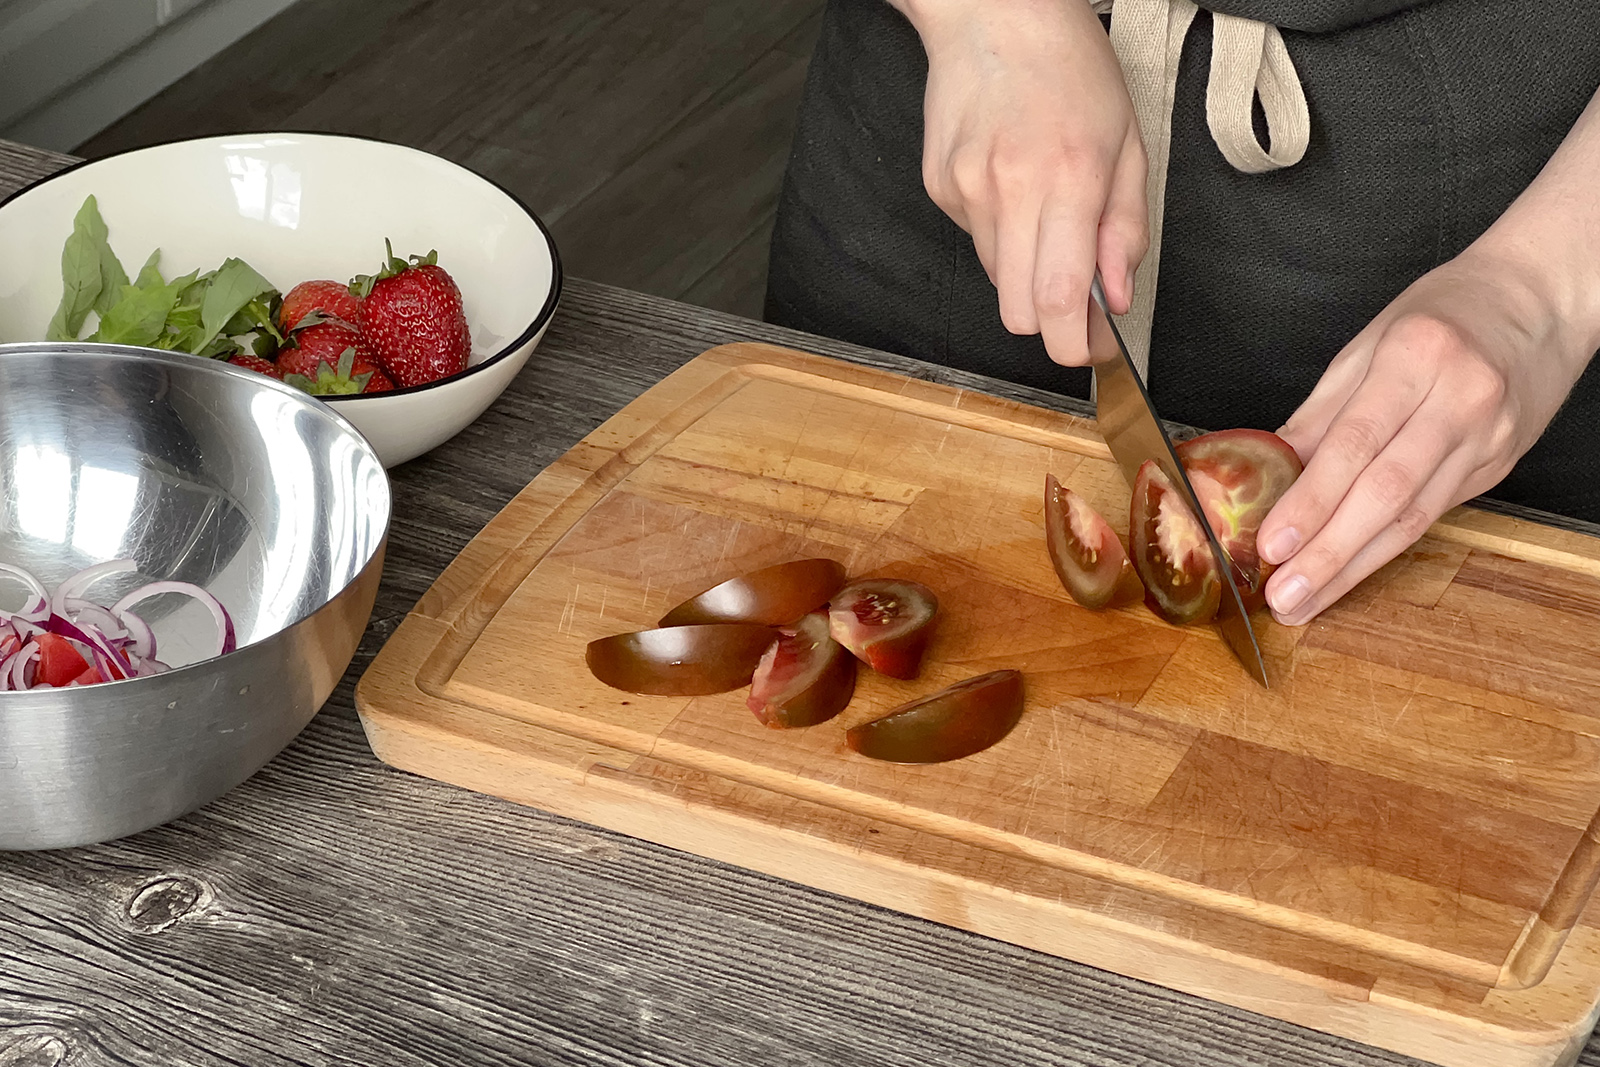 Нарезка томатов — лучший способ узнать, насколько острые у вас ножи: если лезвие проминает шкурку, а не разрезает ее с одного движения, значит, ножи пора точить